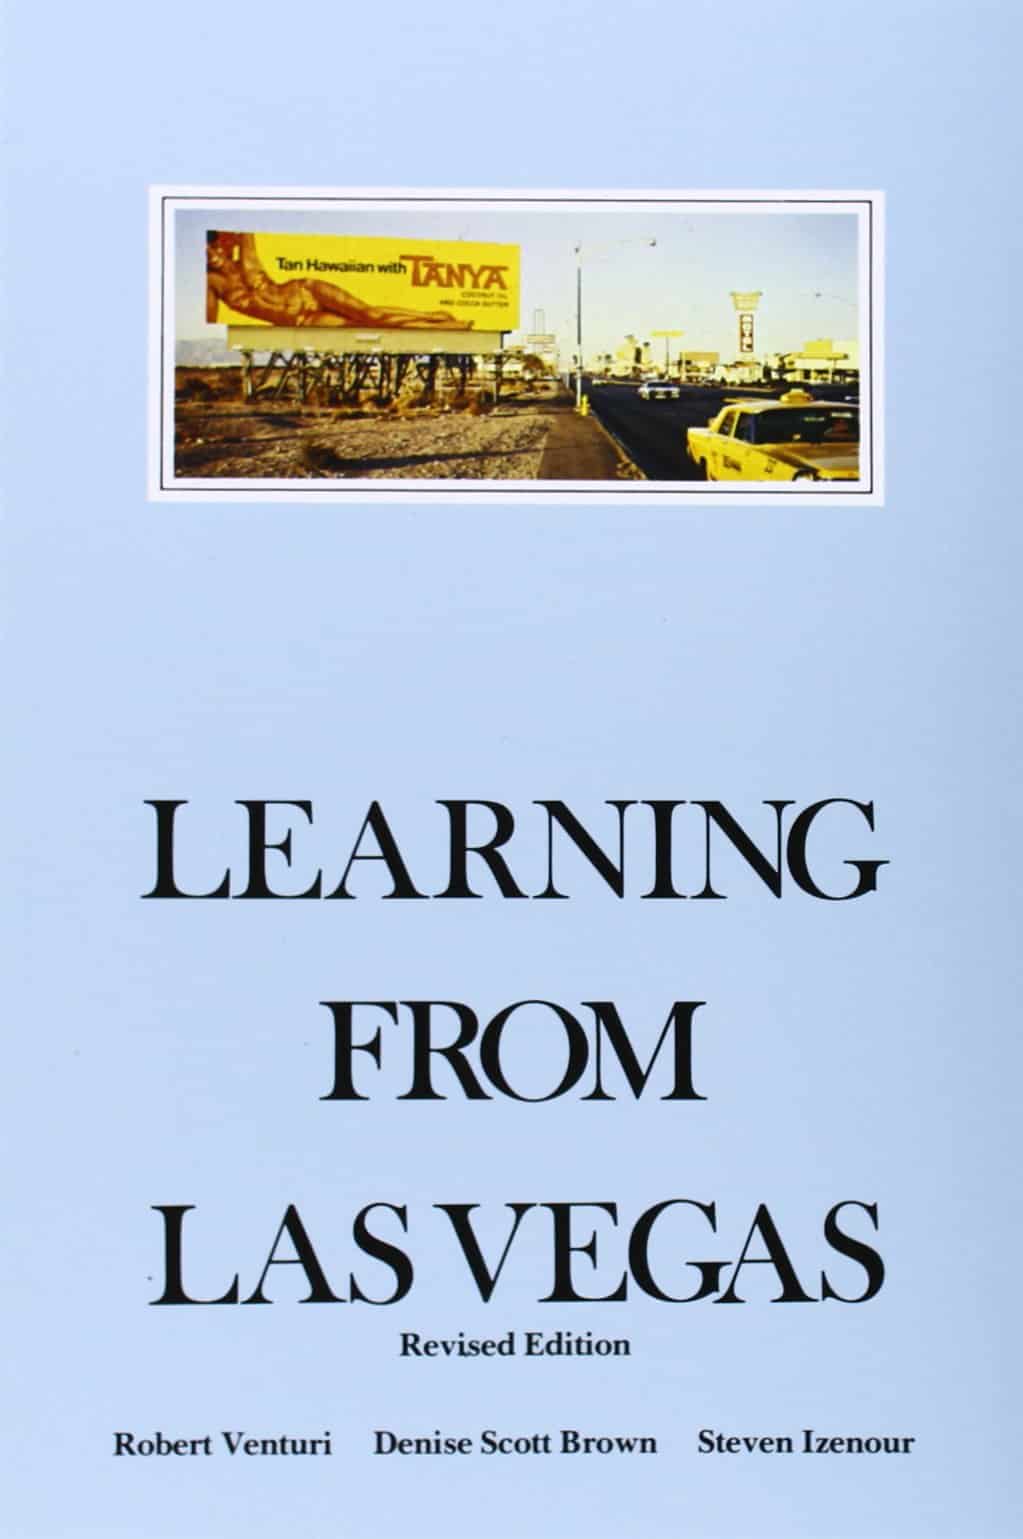 Learn from Las Vegas